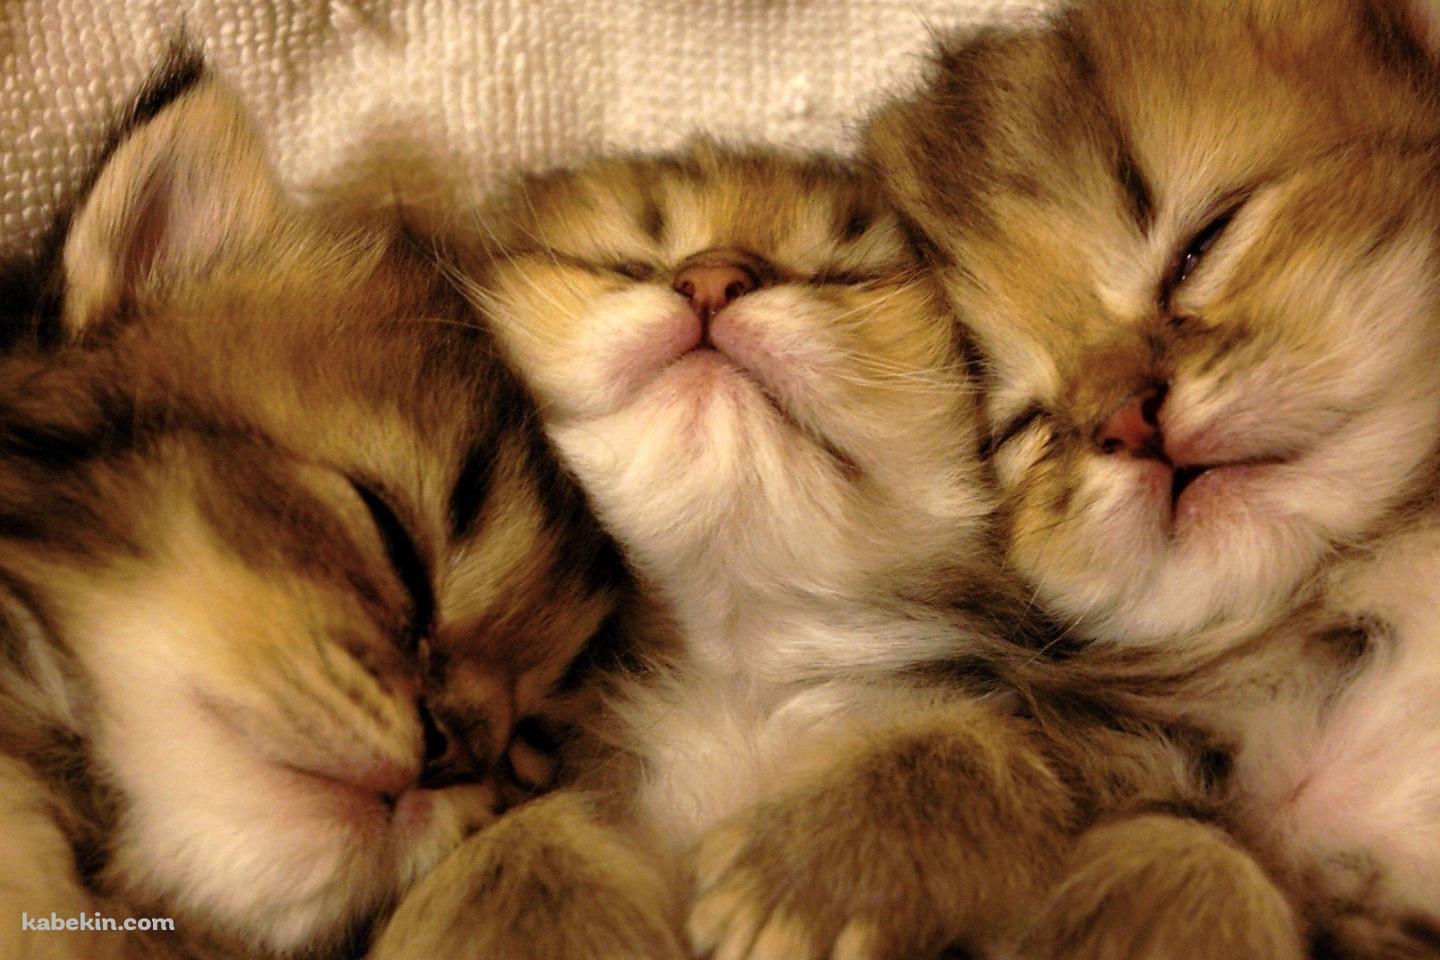 並んで寝る3匹の子猫の壁紙(1440px x 960px) 高画質 PC・デスクトップ用